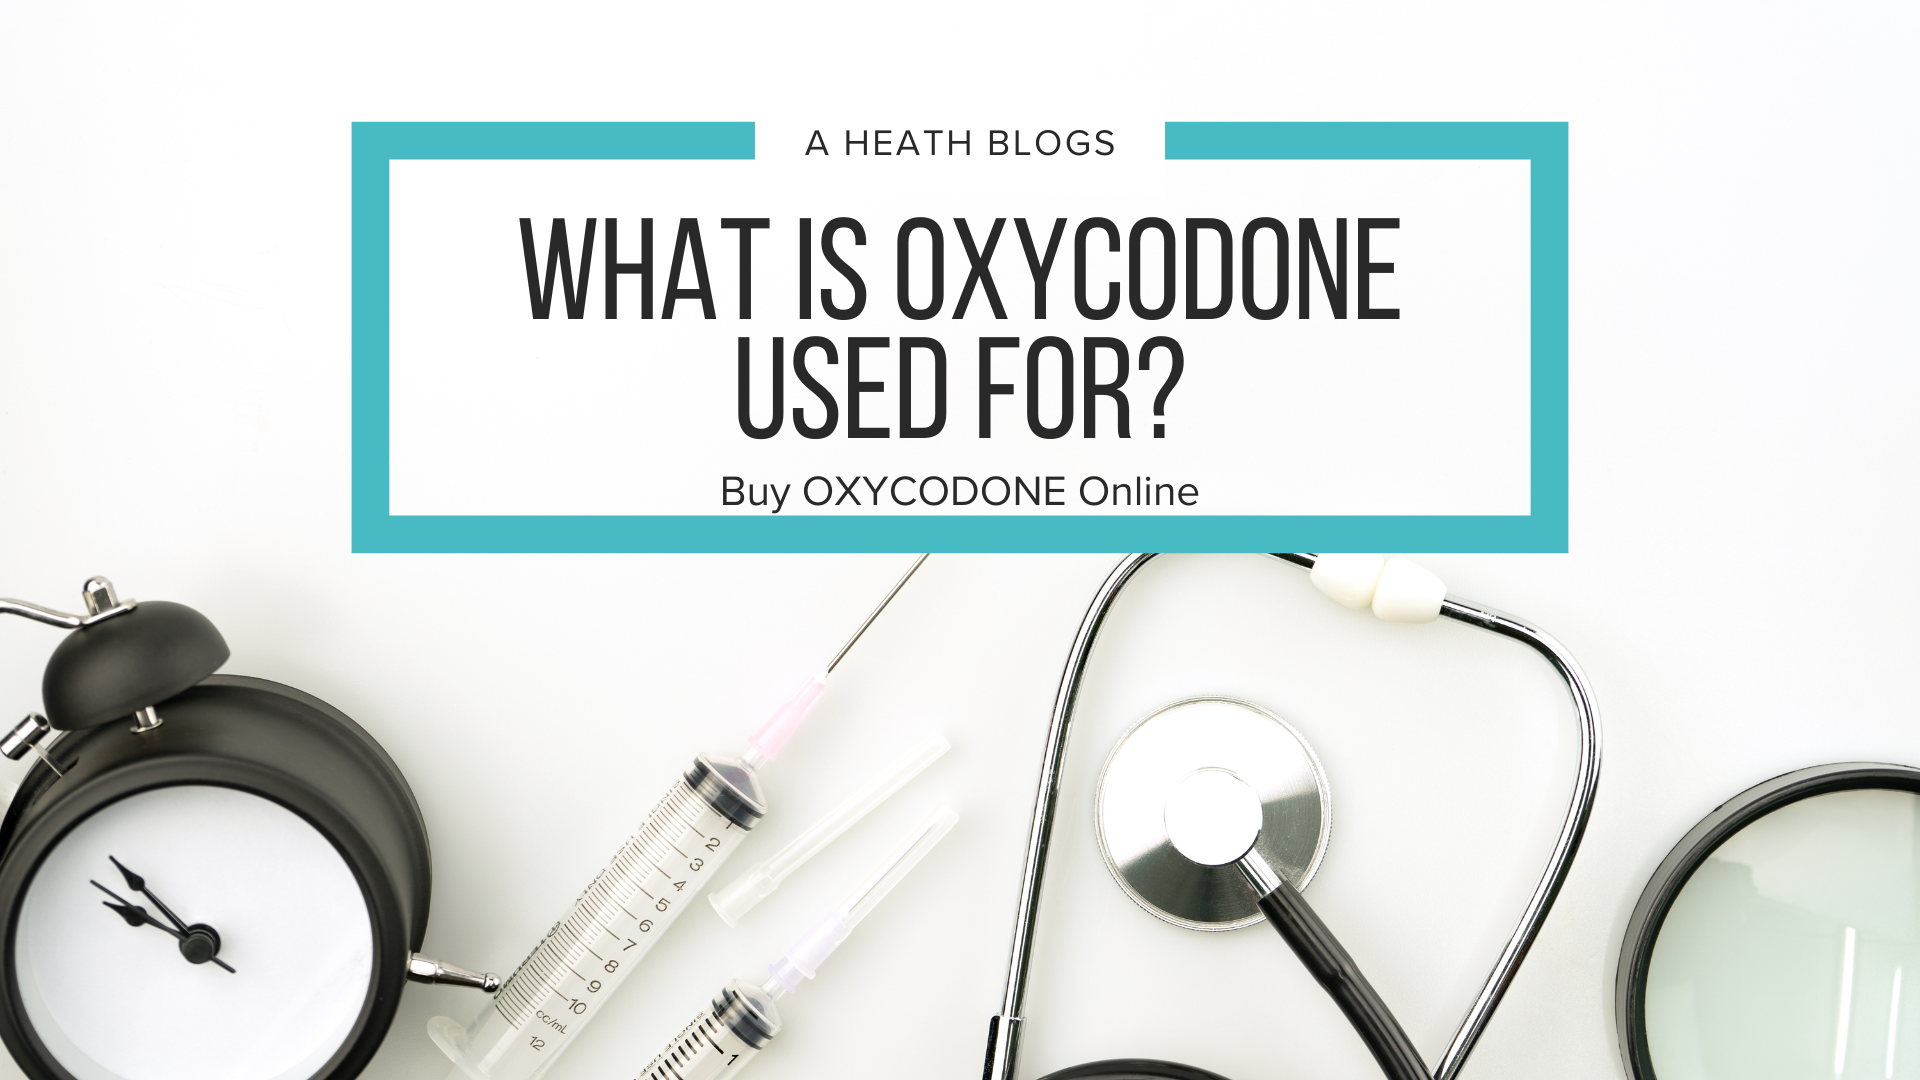 Buy OXYCODONE Online